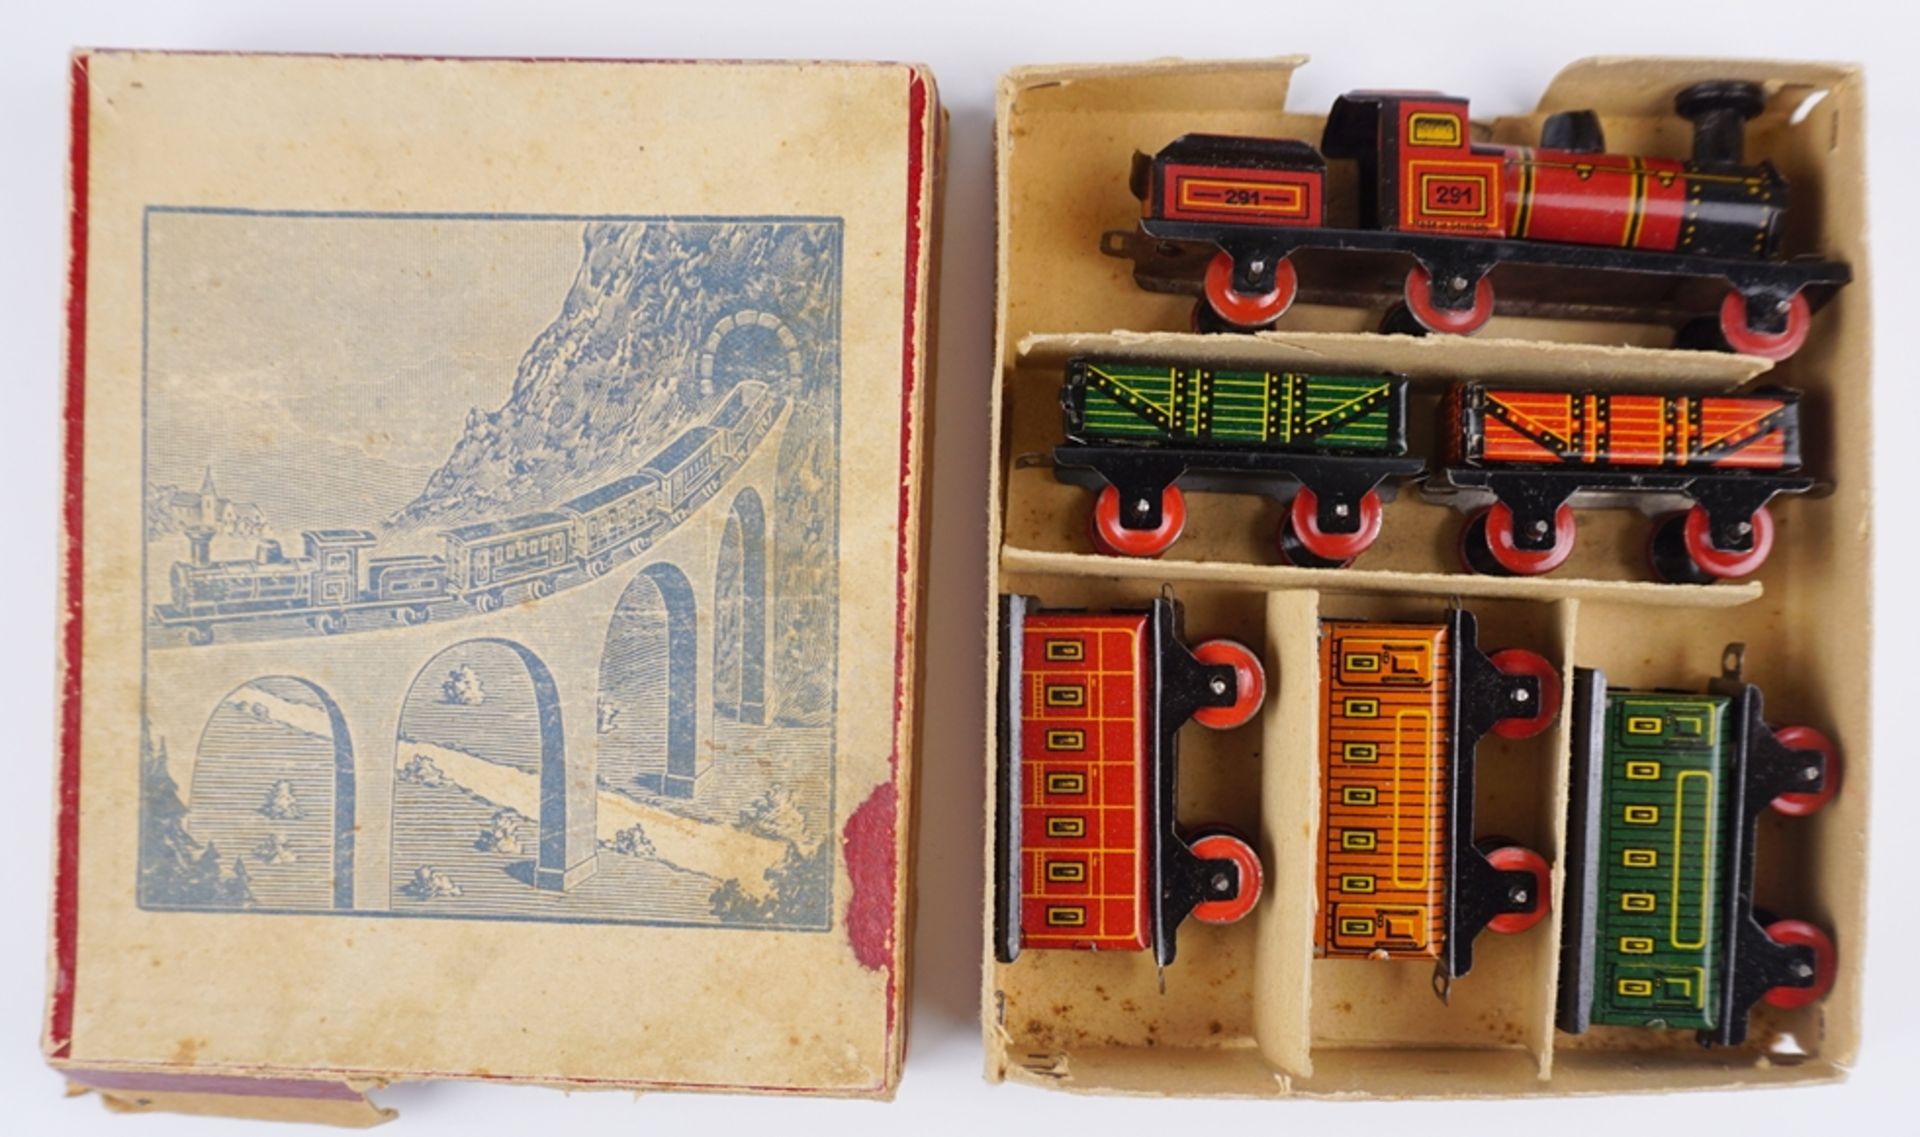 6-tlg. Miniatureisenbahn, Blechspielzeug, in OVP, wohl 1950er Jahre - Bild 2 aus 2